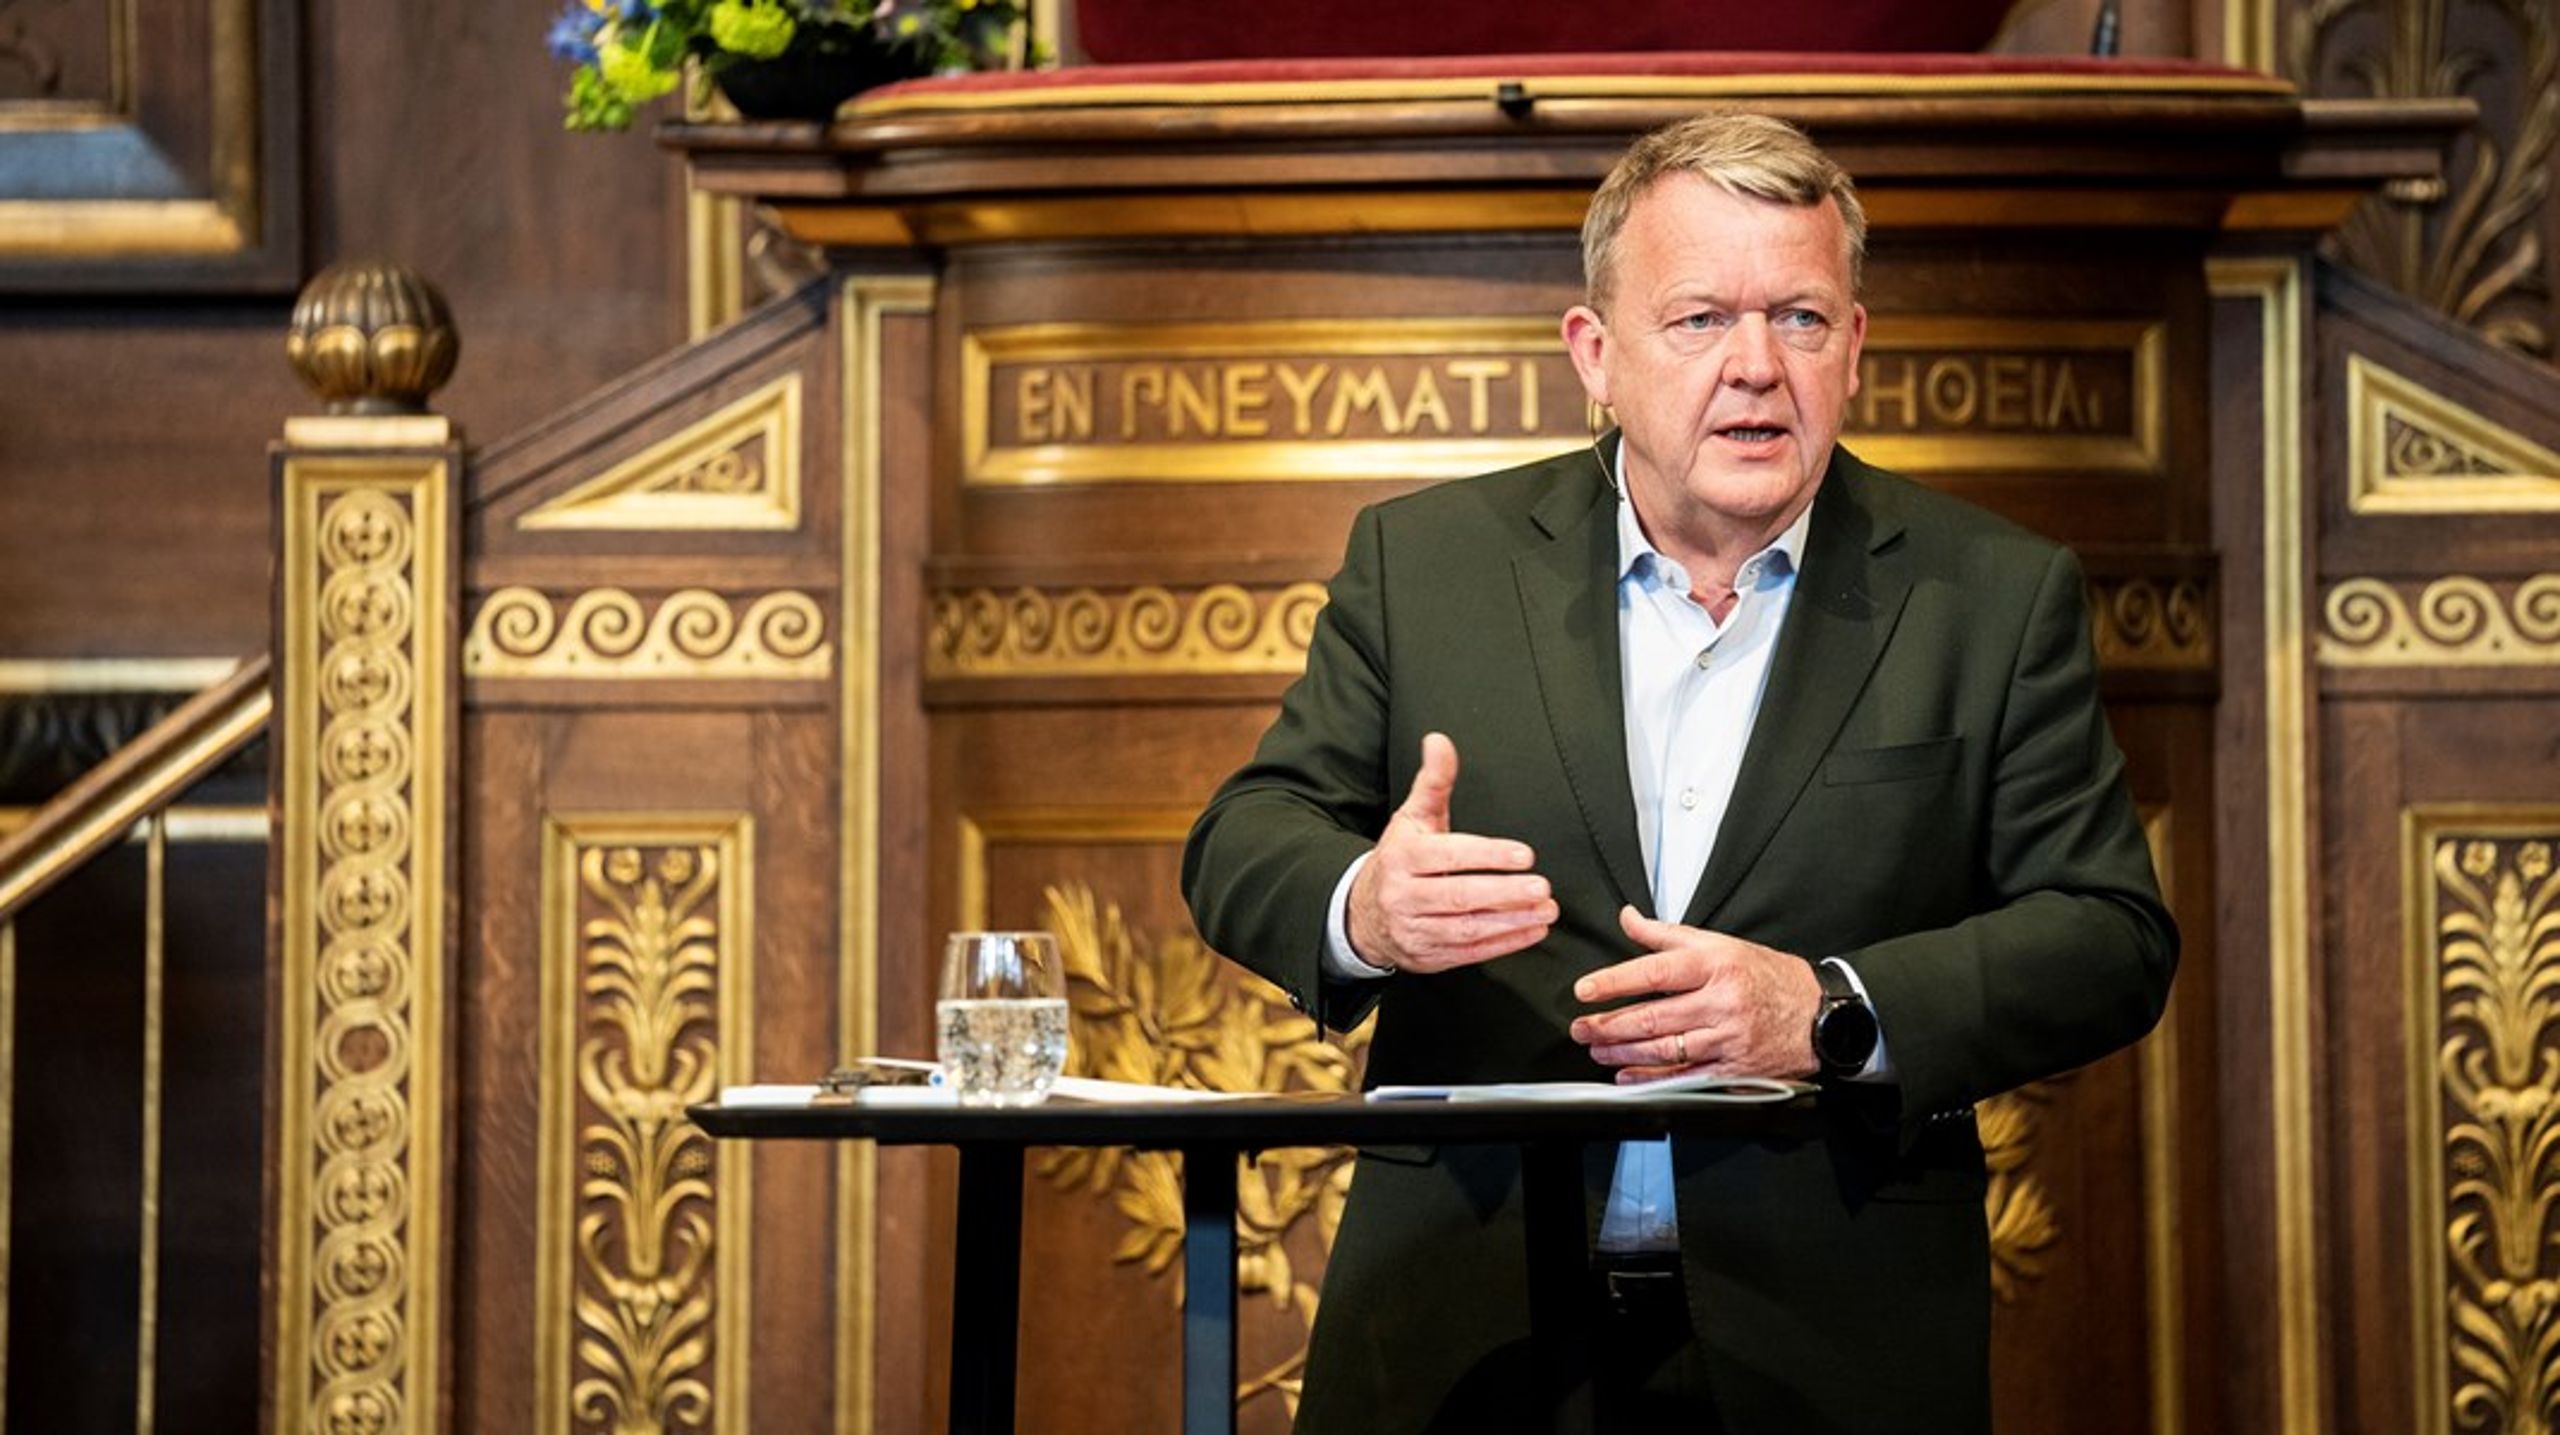 Da udenrigsminister Lars Løkke Rasmussen (M) tirsdag præsenterede regeringens udenrigspolitiske strategi på Københavns Universitet, sagde han blandt andet, at Danmark skal blive bedre til at lytte til sine samarbejdspartnere i det globale syd.&nbsp;